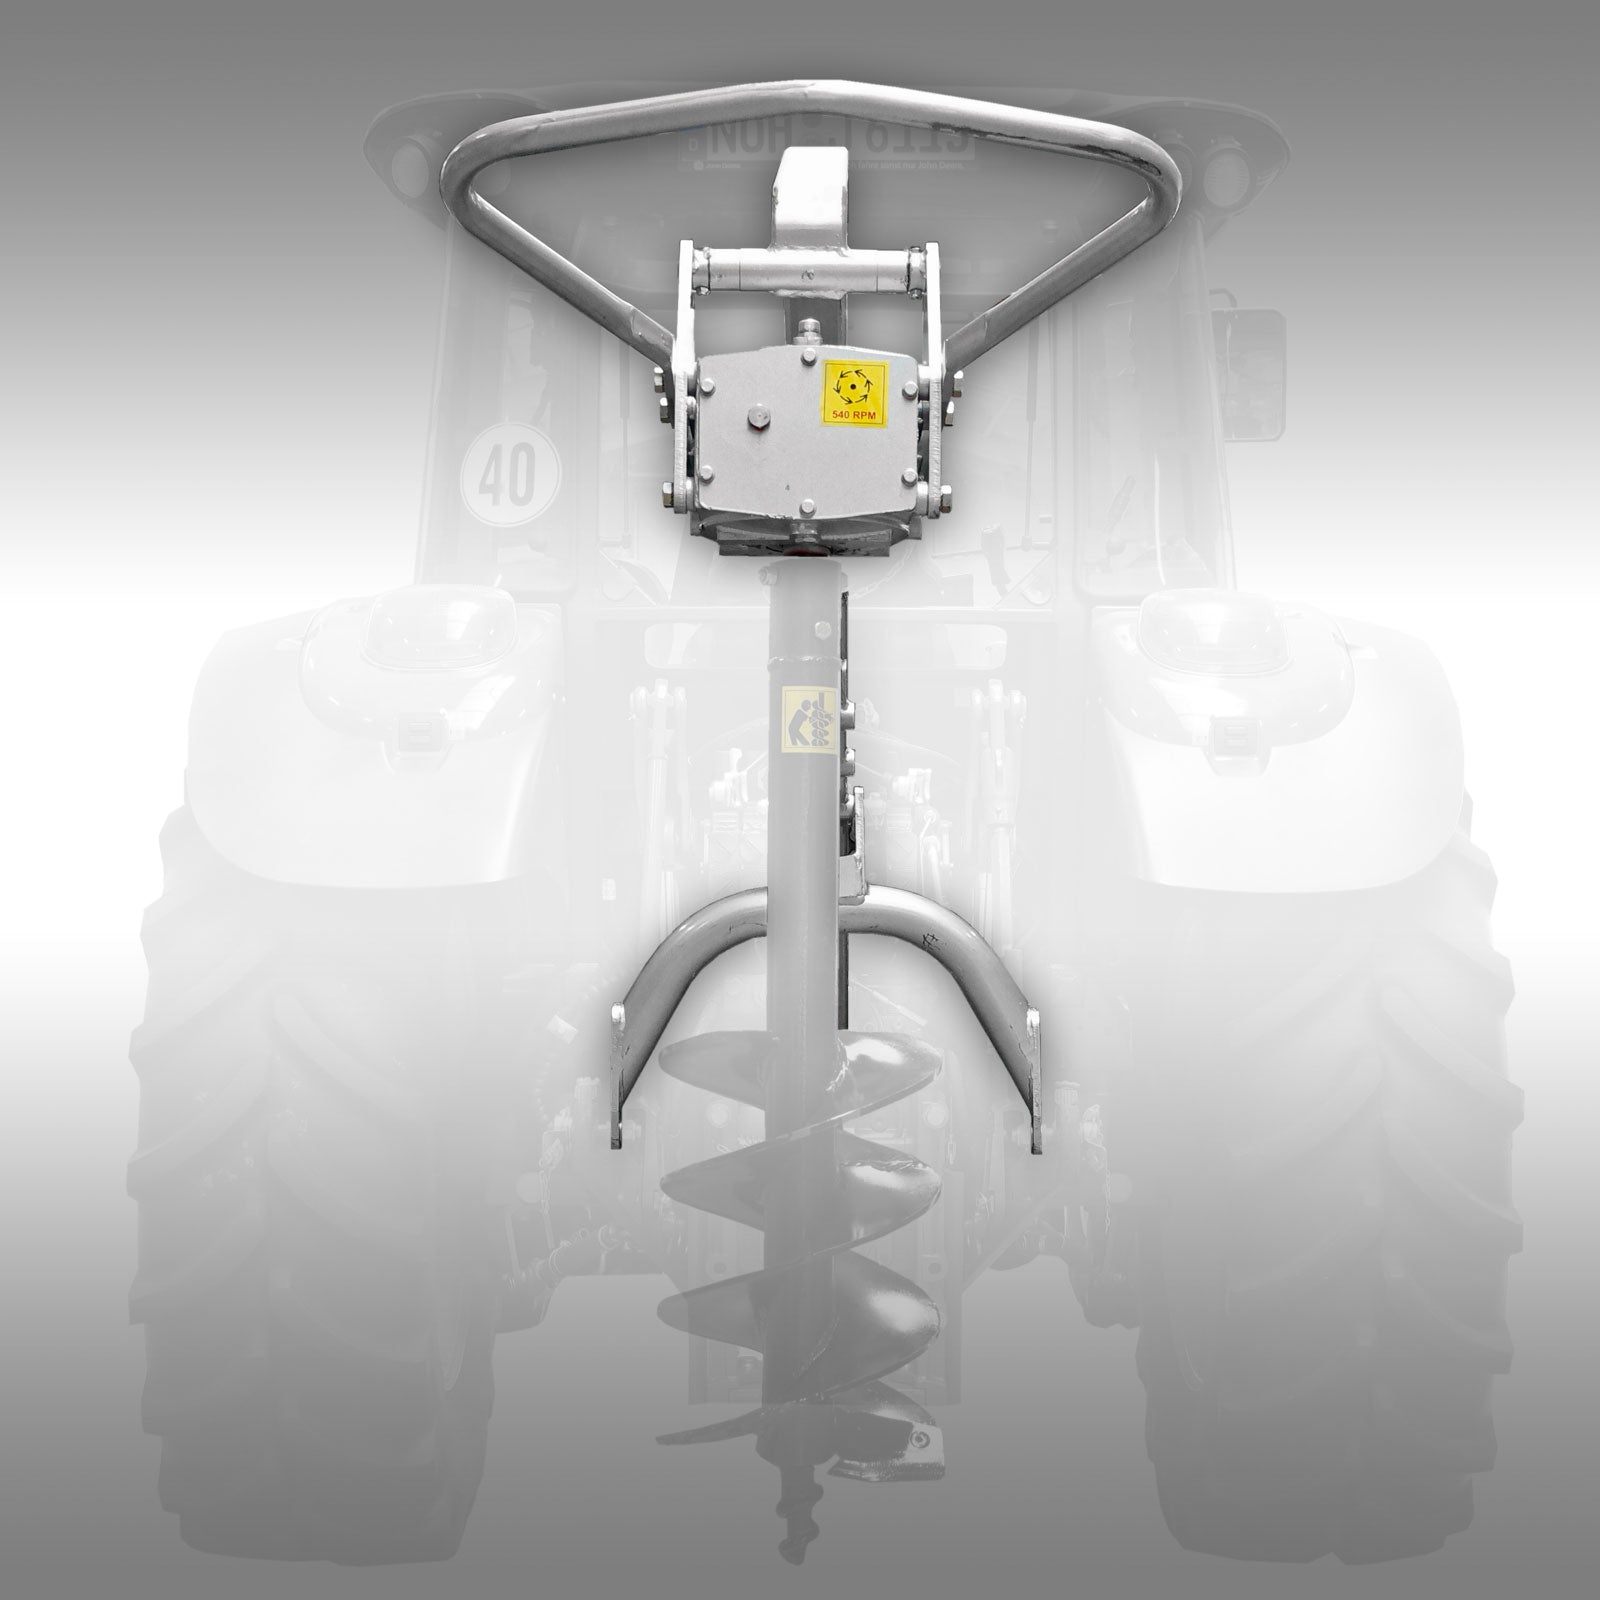 Traktorbohrer/Erdbohrgerät Jansen TBG-300. Robust,kraftvoll,vielseitig